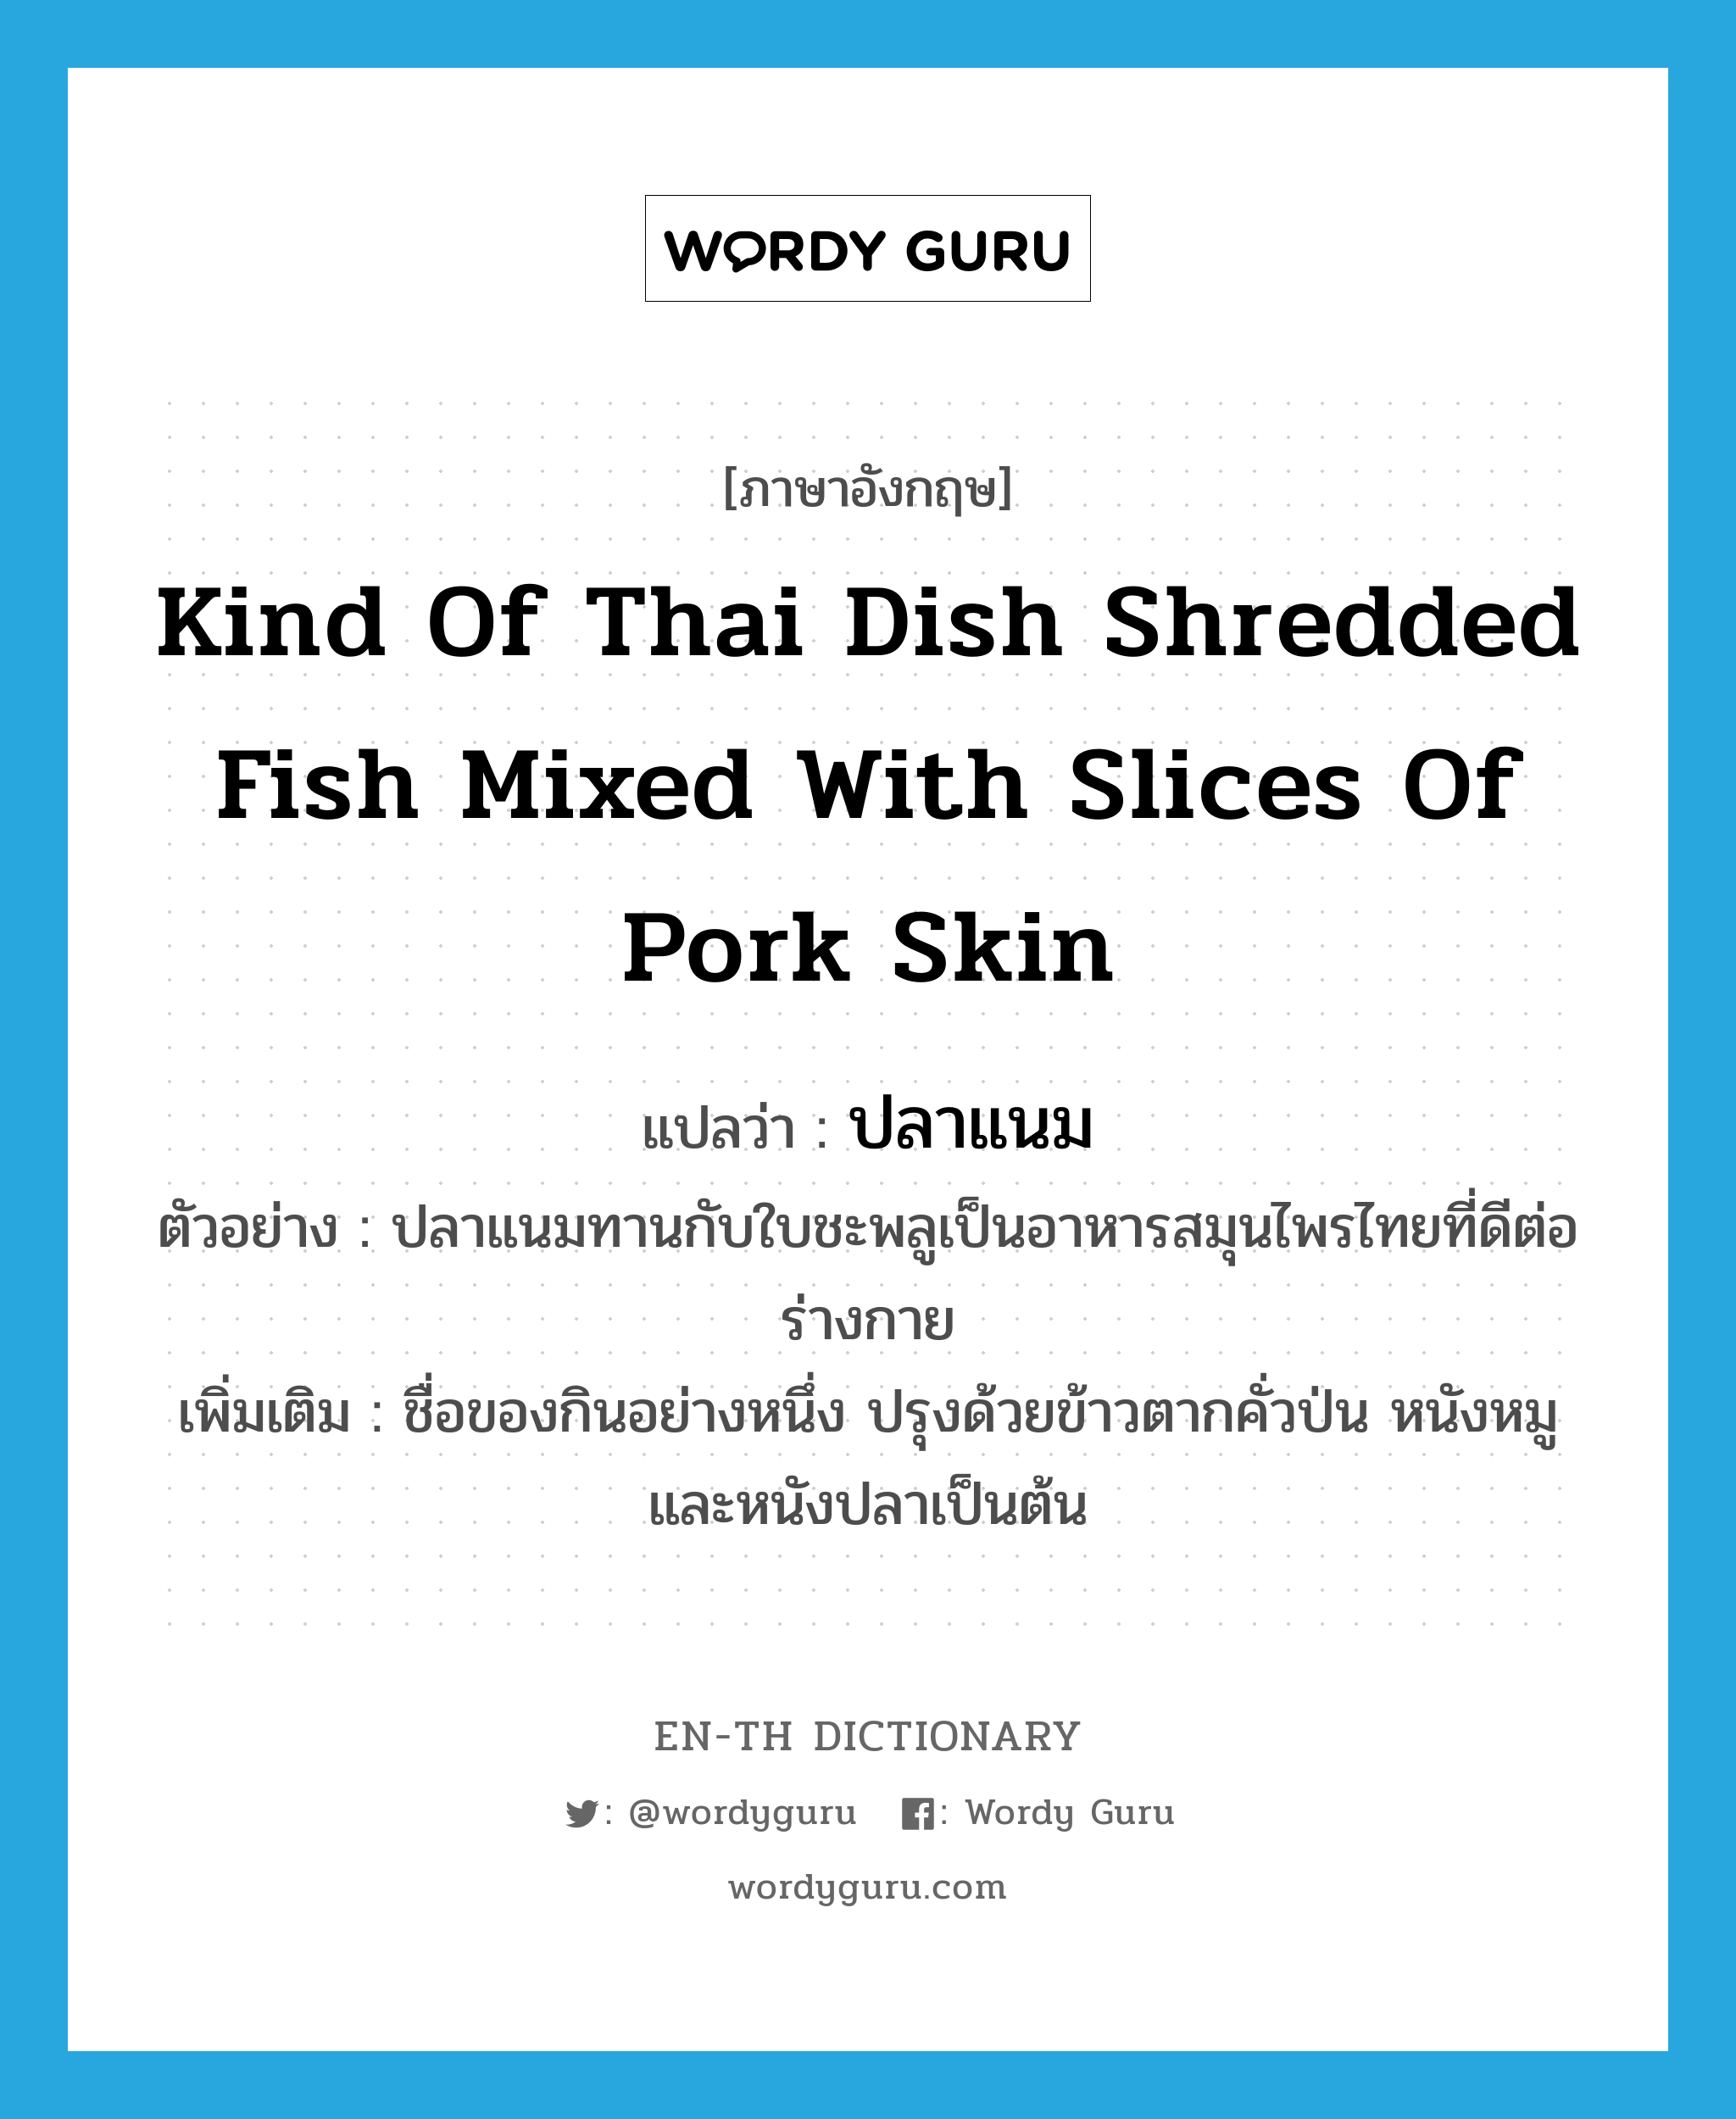 ปลาแนม ภาษาอังกฤษ?, คำศัพท์ภาษาอังกฤษ ปลาแนม แปลว่า kind of Thai dish shredded fish mixed with slices of pork skin ประเภท N ตัวอย่าง ปลาแนมทานกับใบชะพลูเป็นอาหารสมุนไพรไทยที่ดีต่อร่างกาย เพิ่มเติม ชื่อของกินอย่างหนึ่ง ปรุงด้วยข้าวตากคั่วป่น หนังหมู และหนังปลาเป็นต้น หมวด N